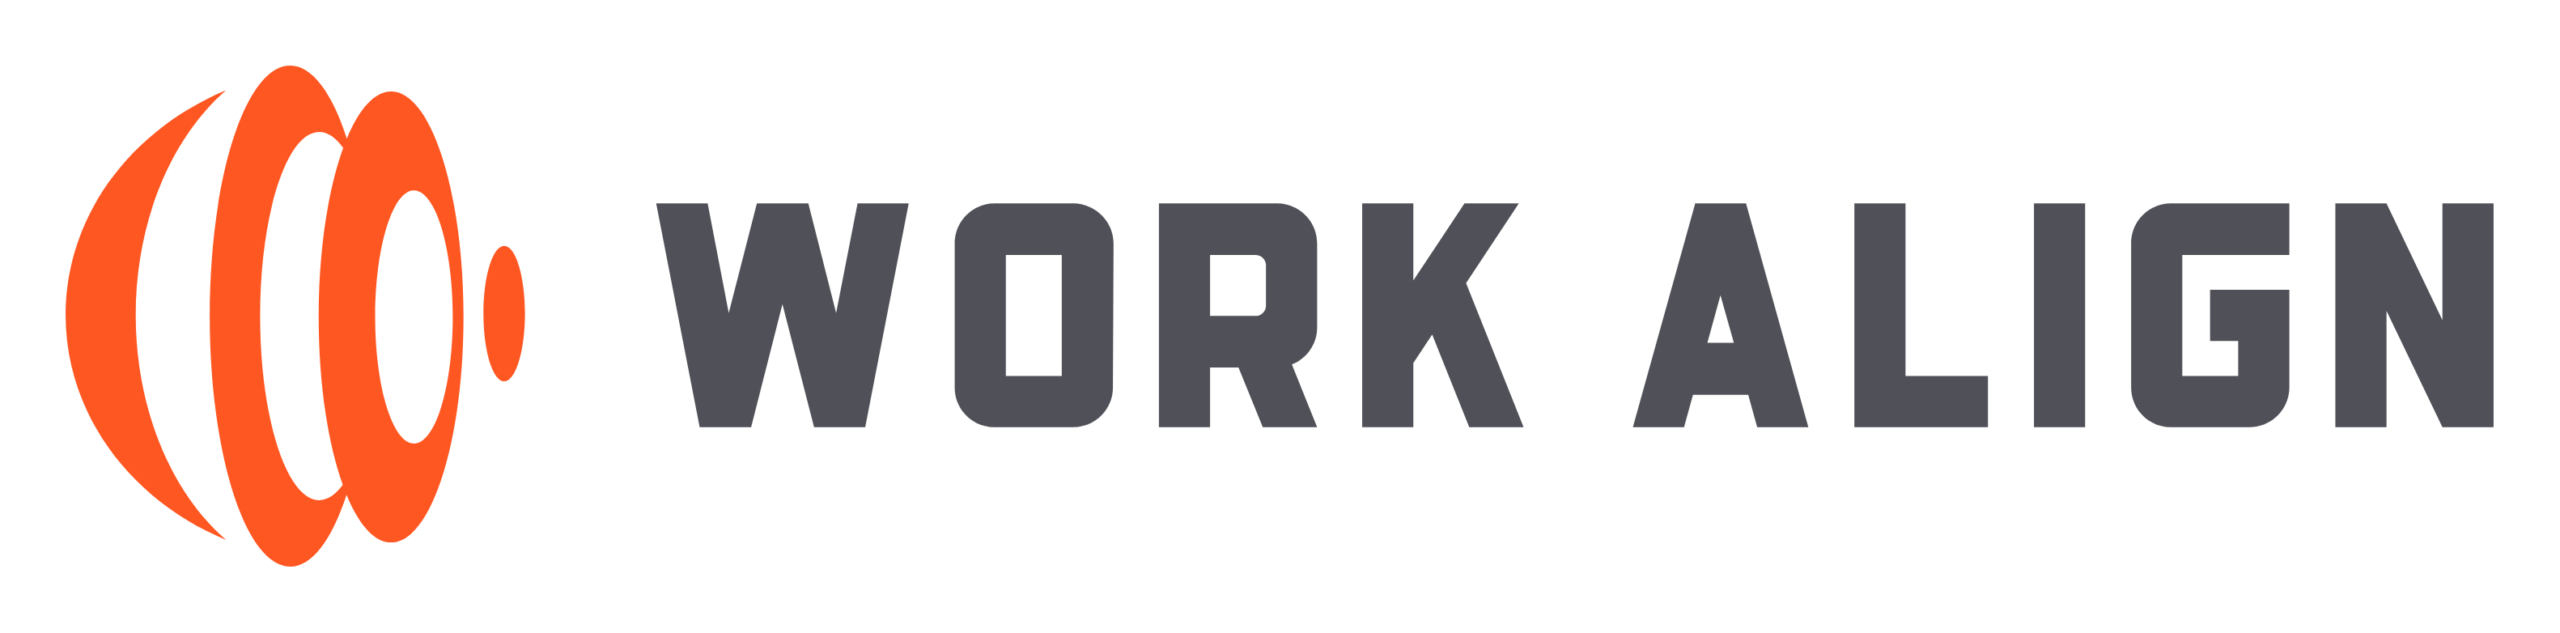 Work Align logo 5